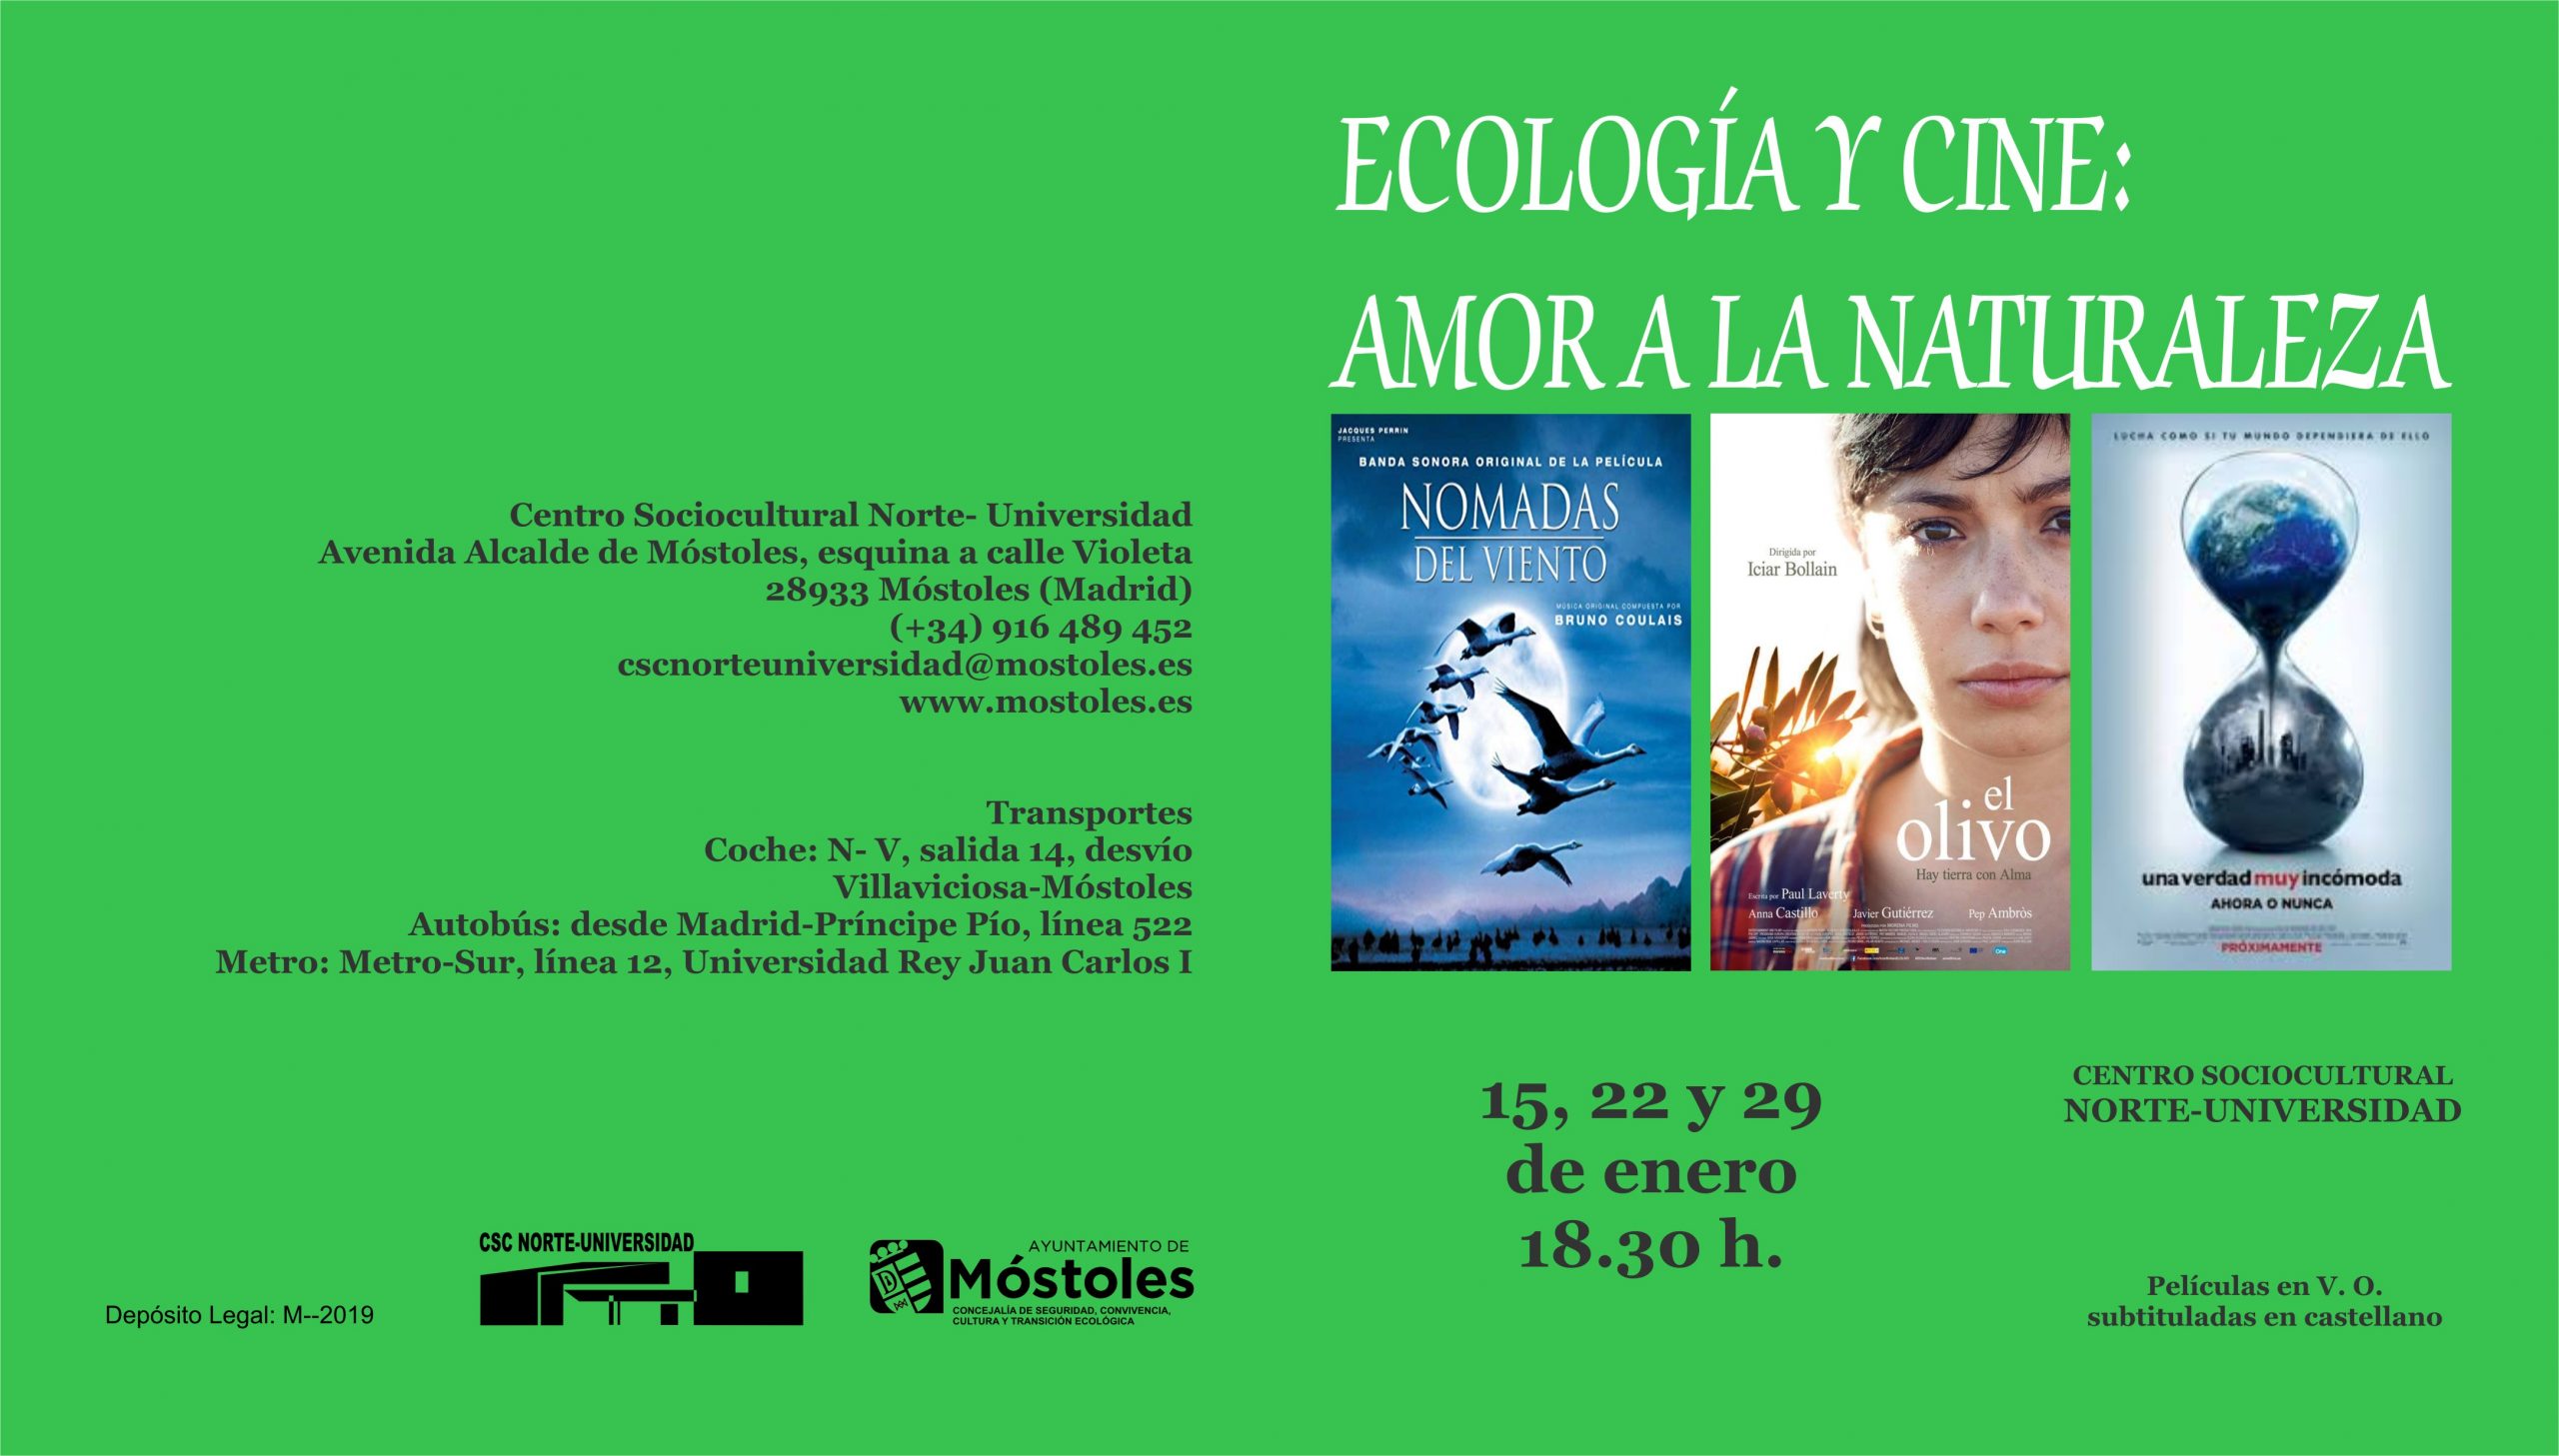 Comienza esta semana en Móstoles un ciclo de cine dedicado a la ecología